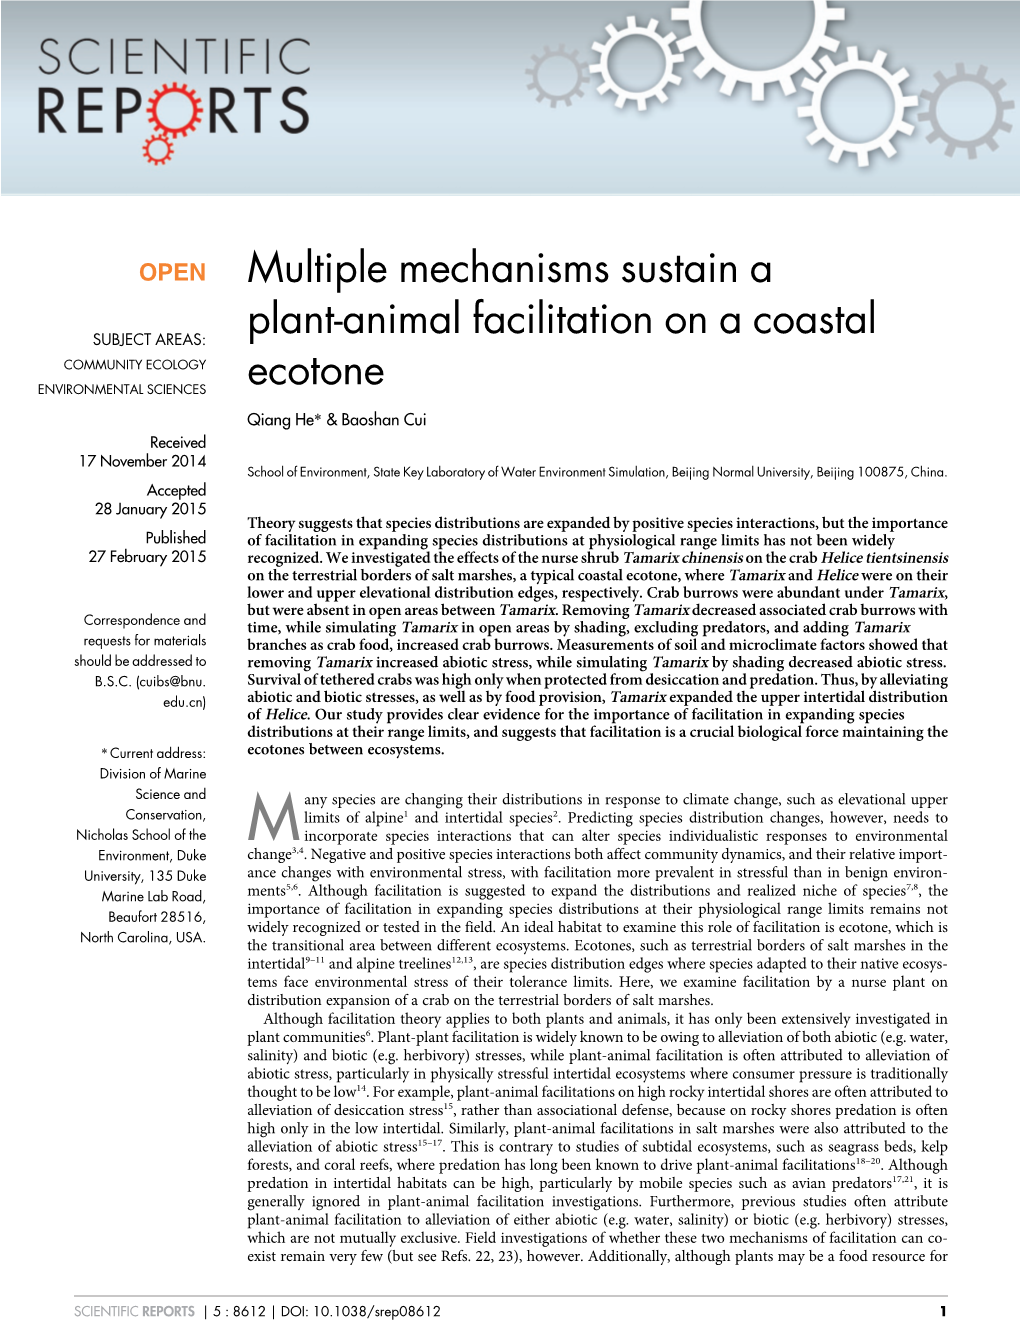 Multiple Mechanisms Sustain a Plant-Animal Facilitation on a Coastal